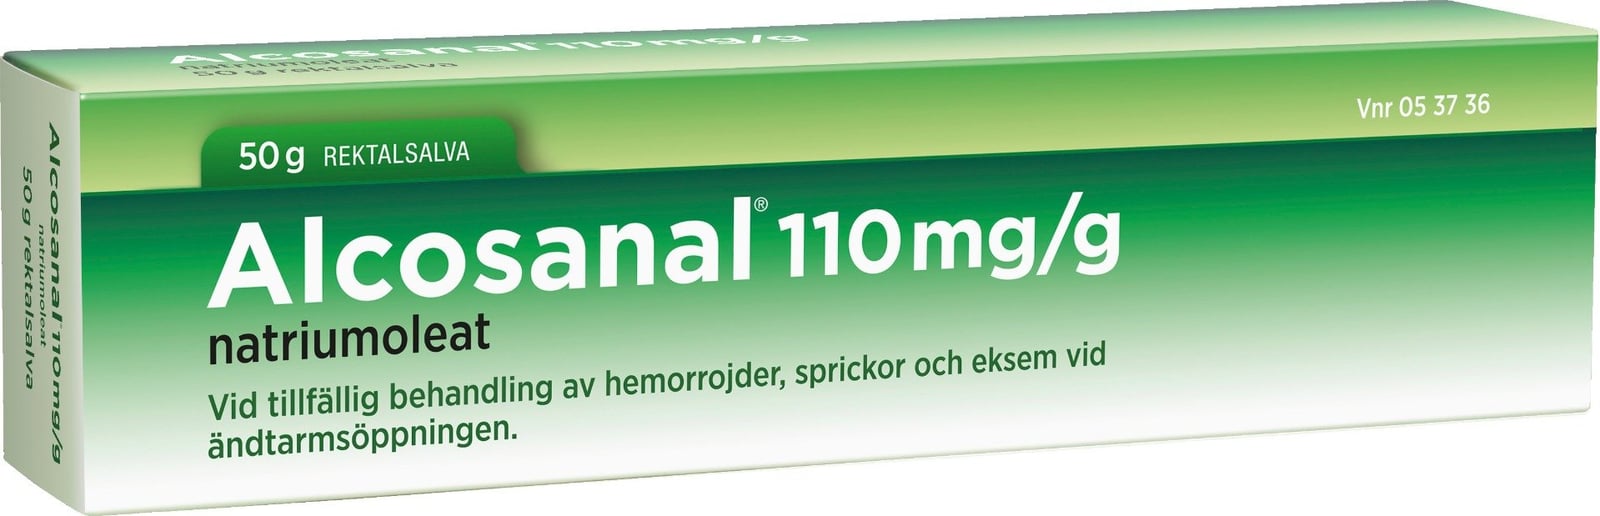 Alcosanal rektalsalva 110 mg/g 50 g